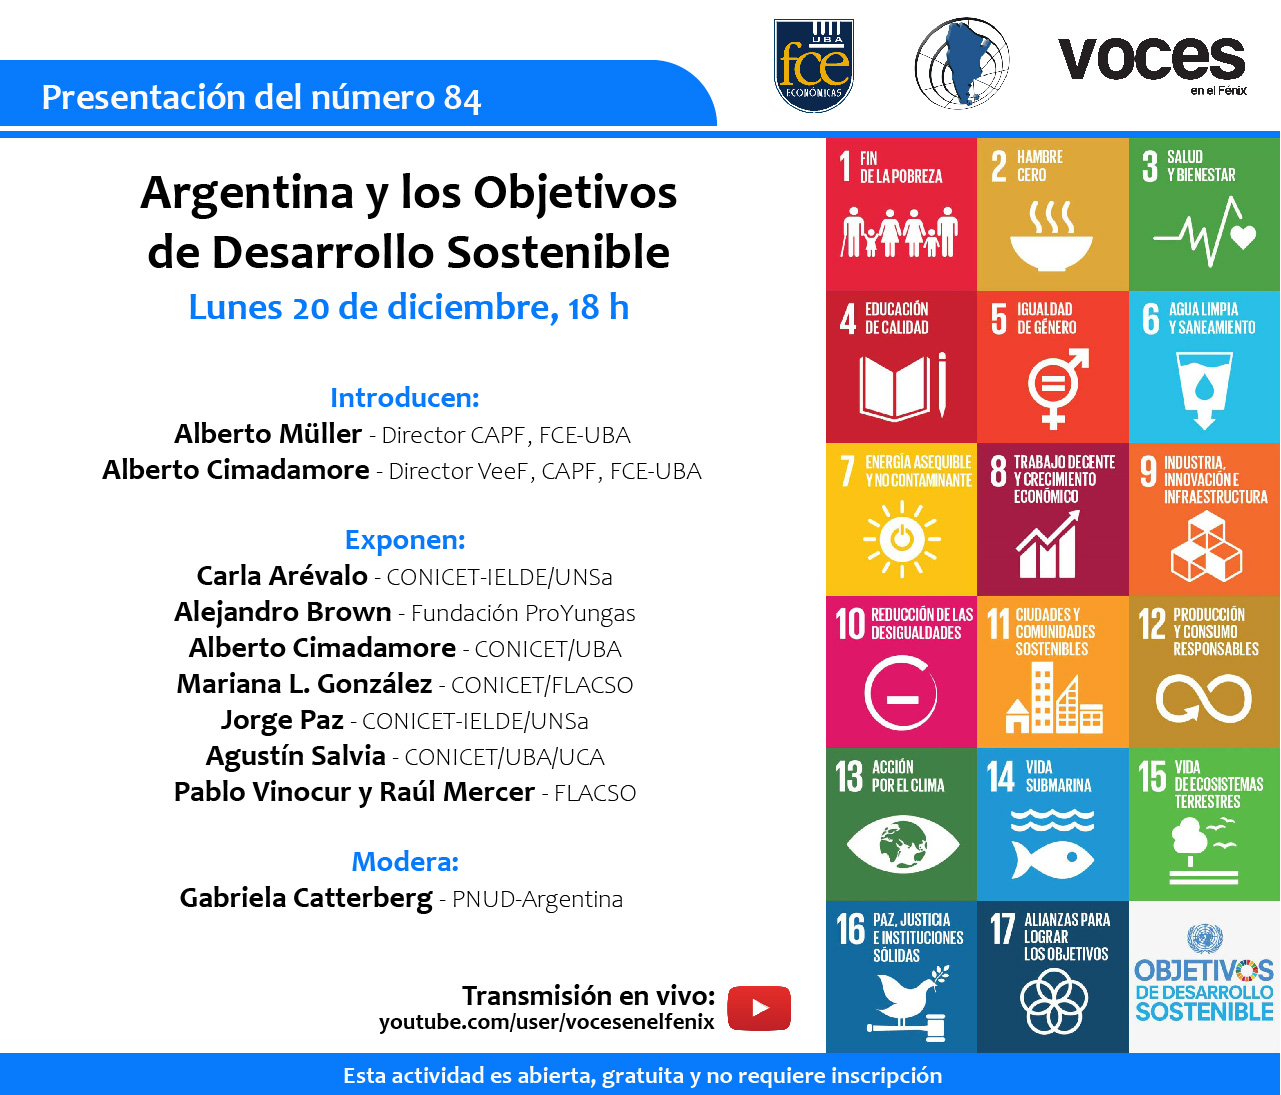 Presentación del número 84: “Argentina y los Objetivos de Desarrollo Sostenible”